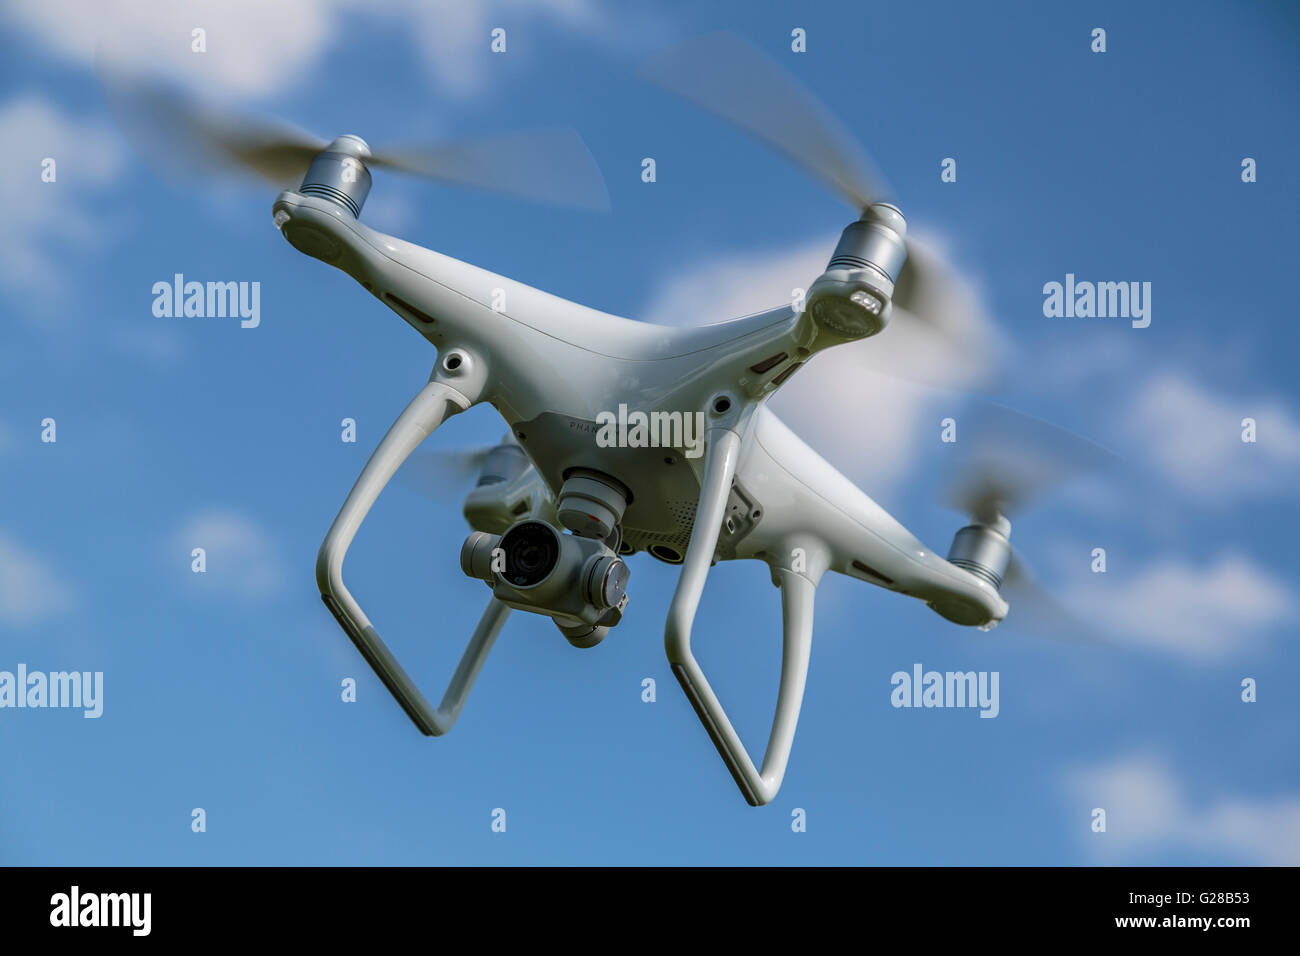 Primo piano immagine di un drone/quadricottero da diporto che si trova a stazionario . Il drone ha la fotocamera e la capacità video, Inghilterra Foto Stock